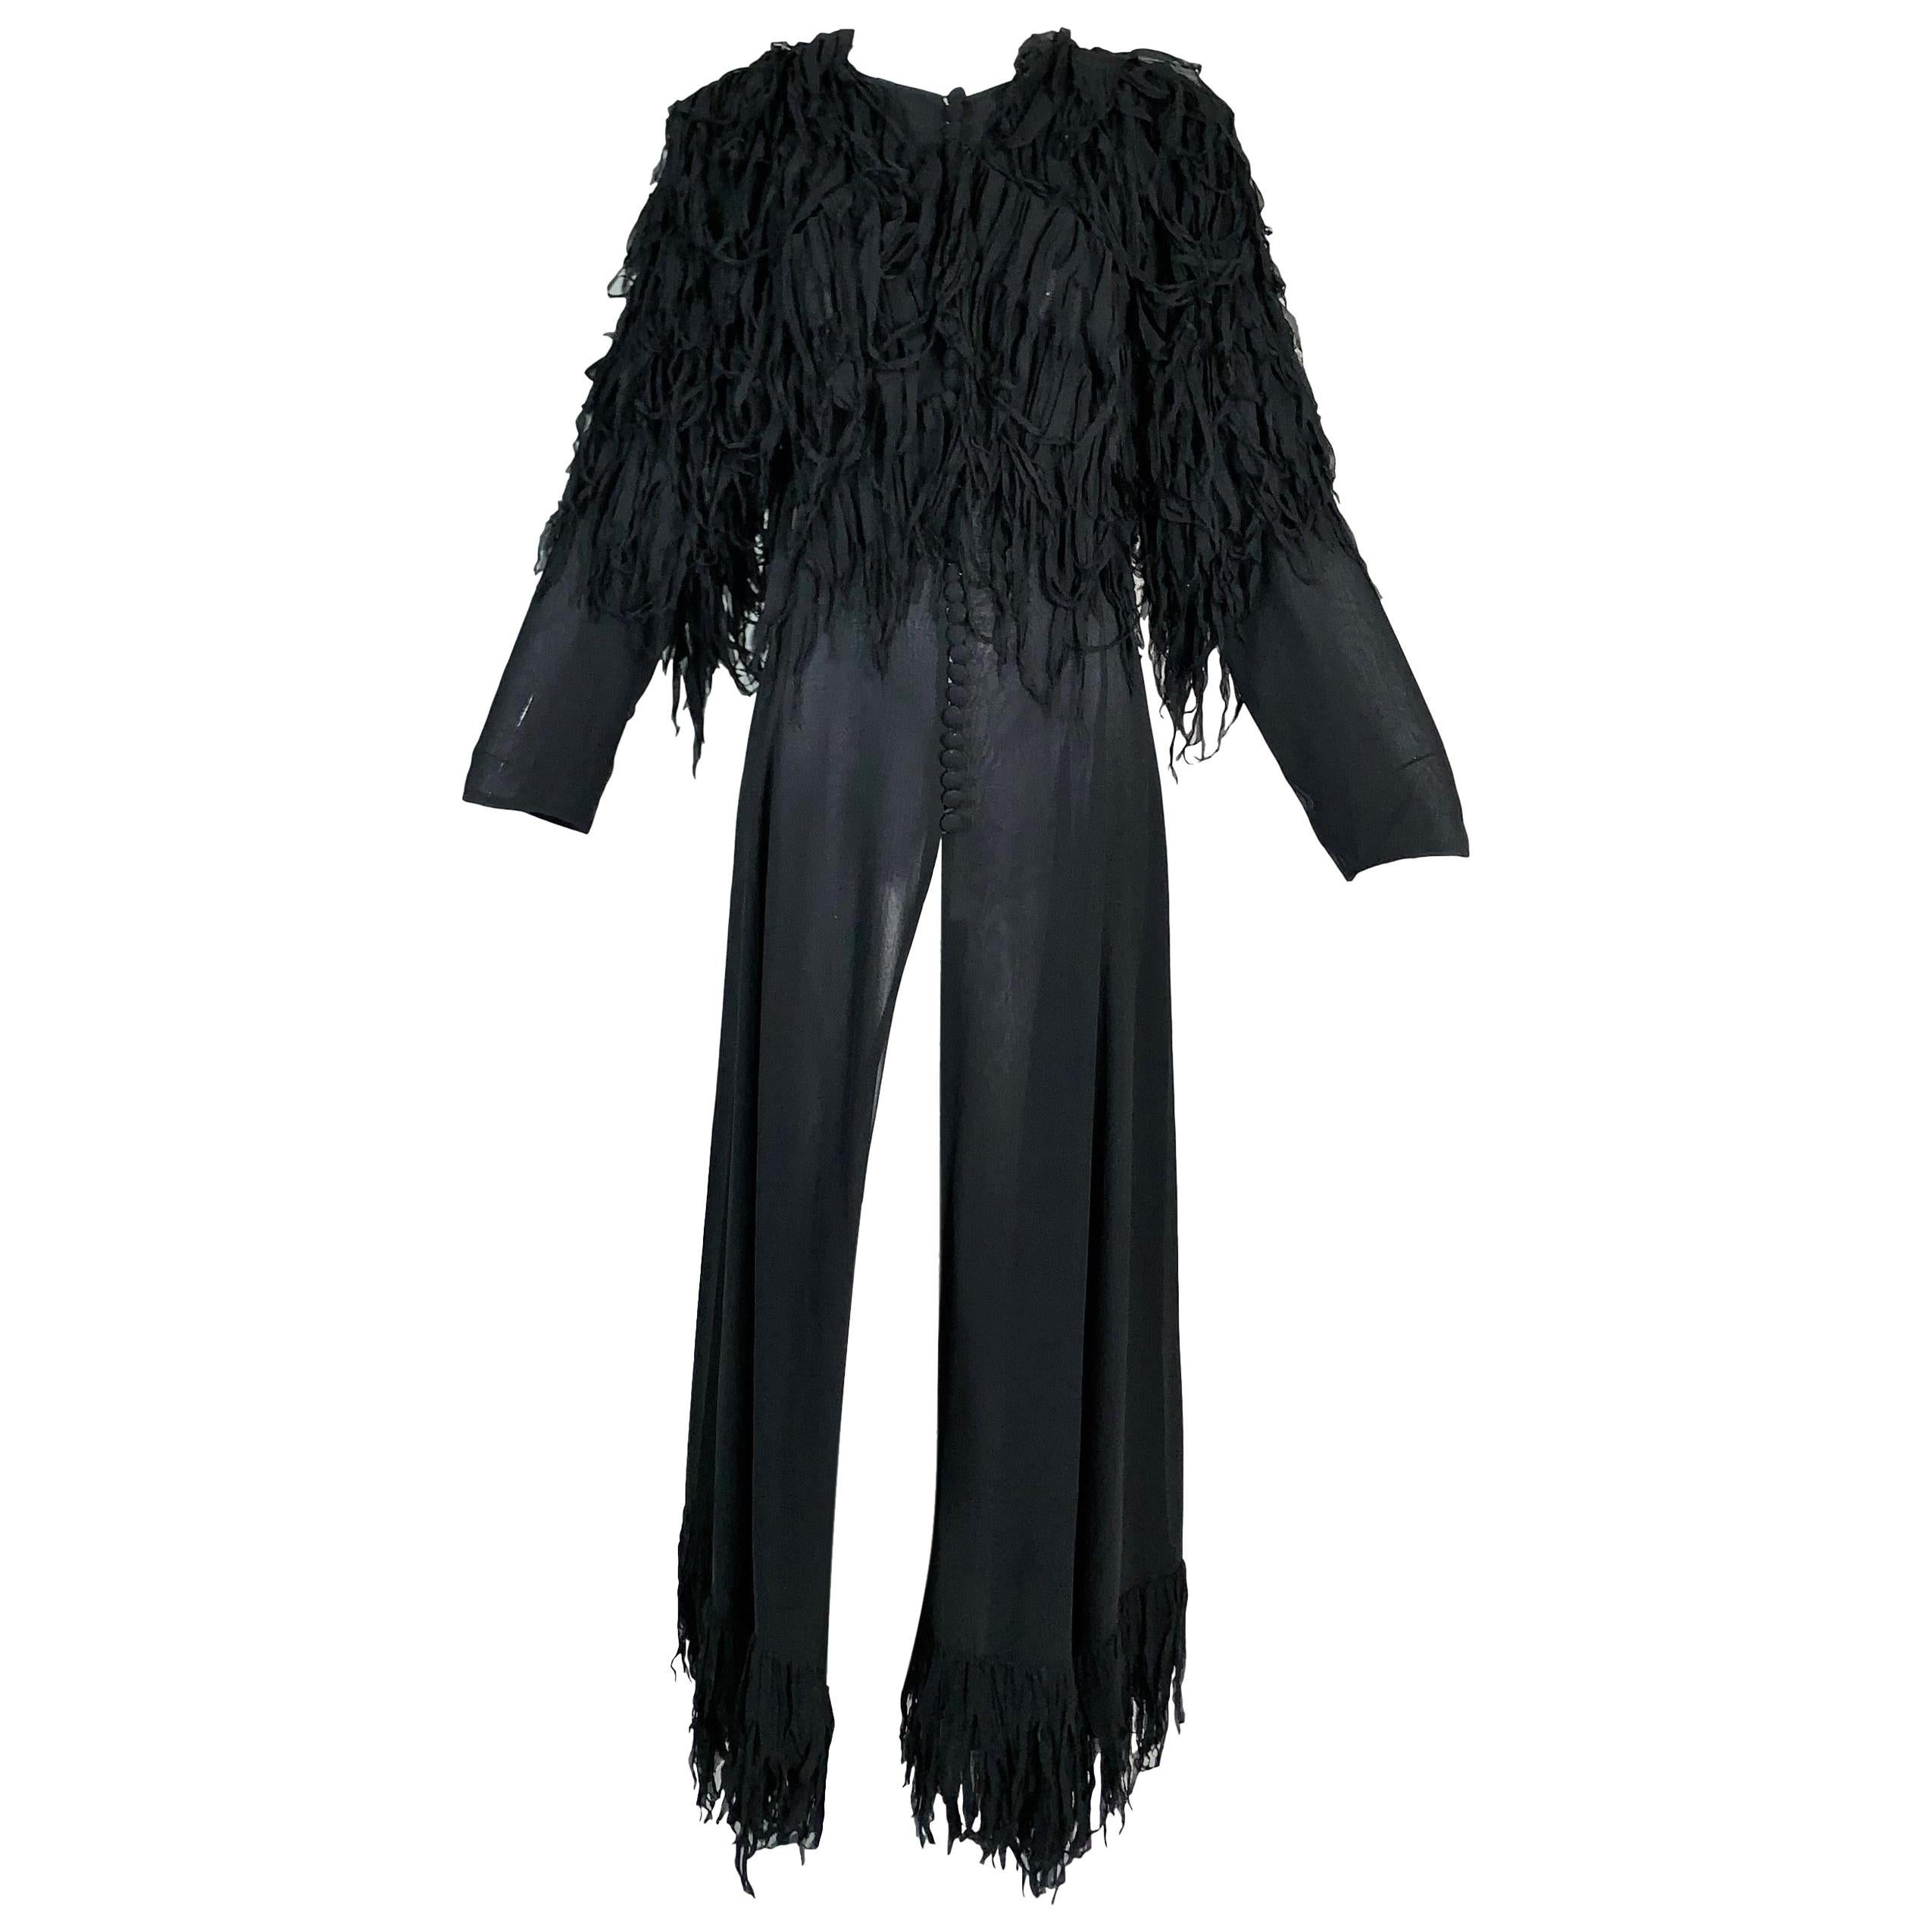 F/W 2003 Yves Saint Laurent Tom Ford Runway Sheer Black Silk Fringe Coat Dress